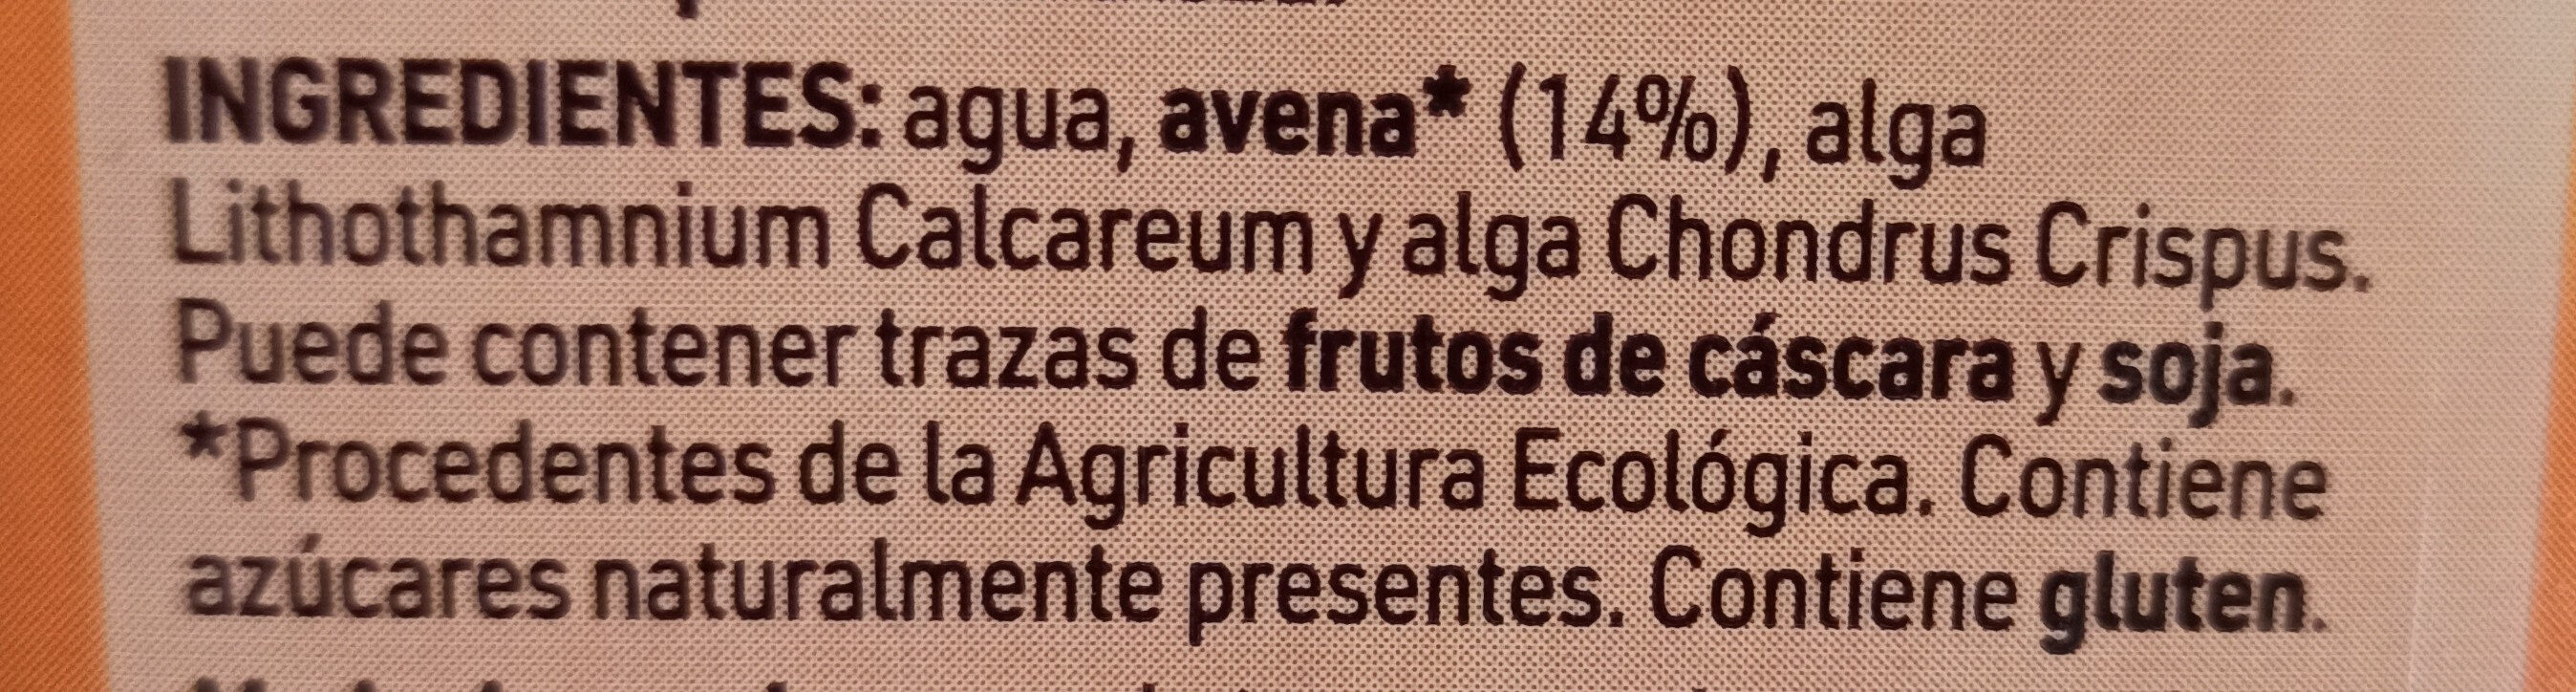 Bebida Avena con Calcio Biológica - Ingredientes